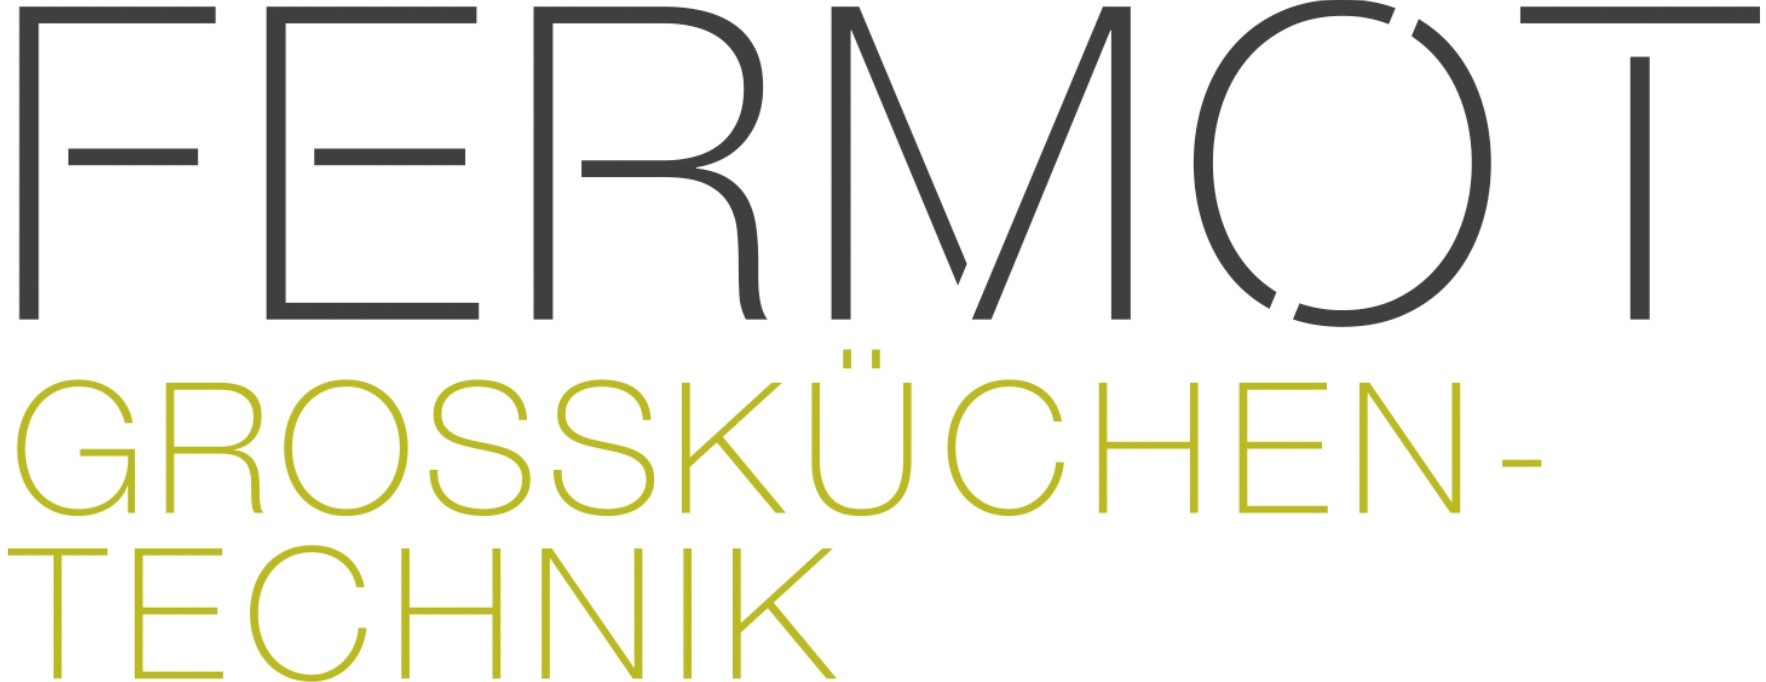 Fermot_Logo